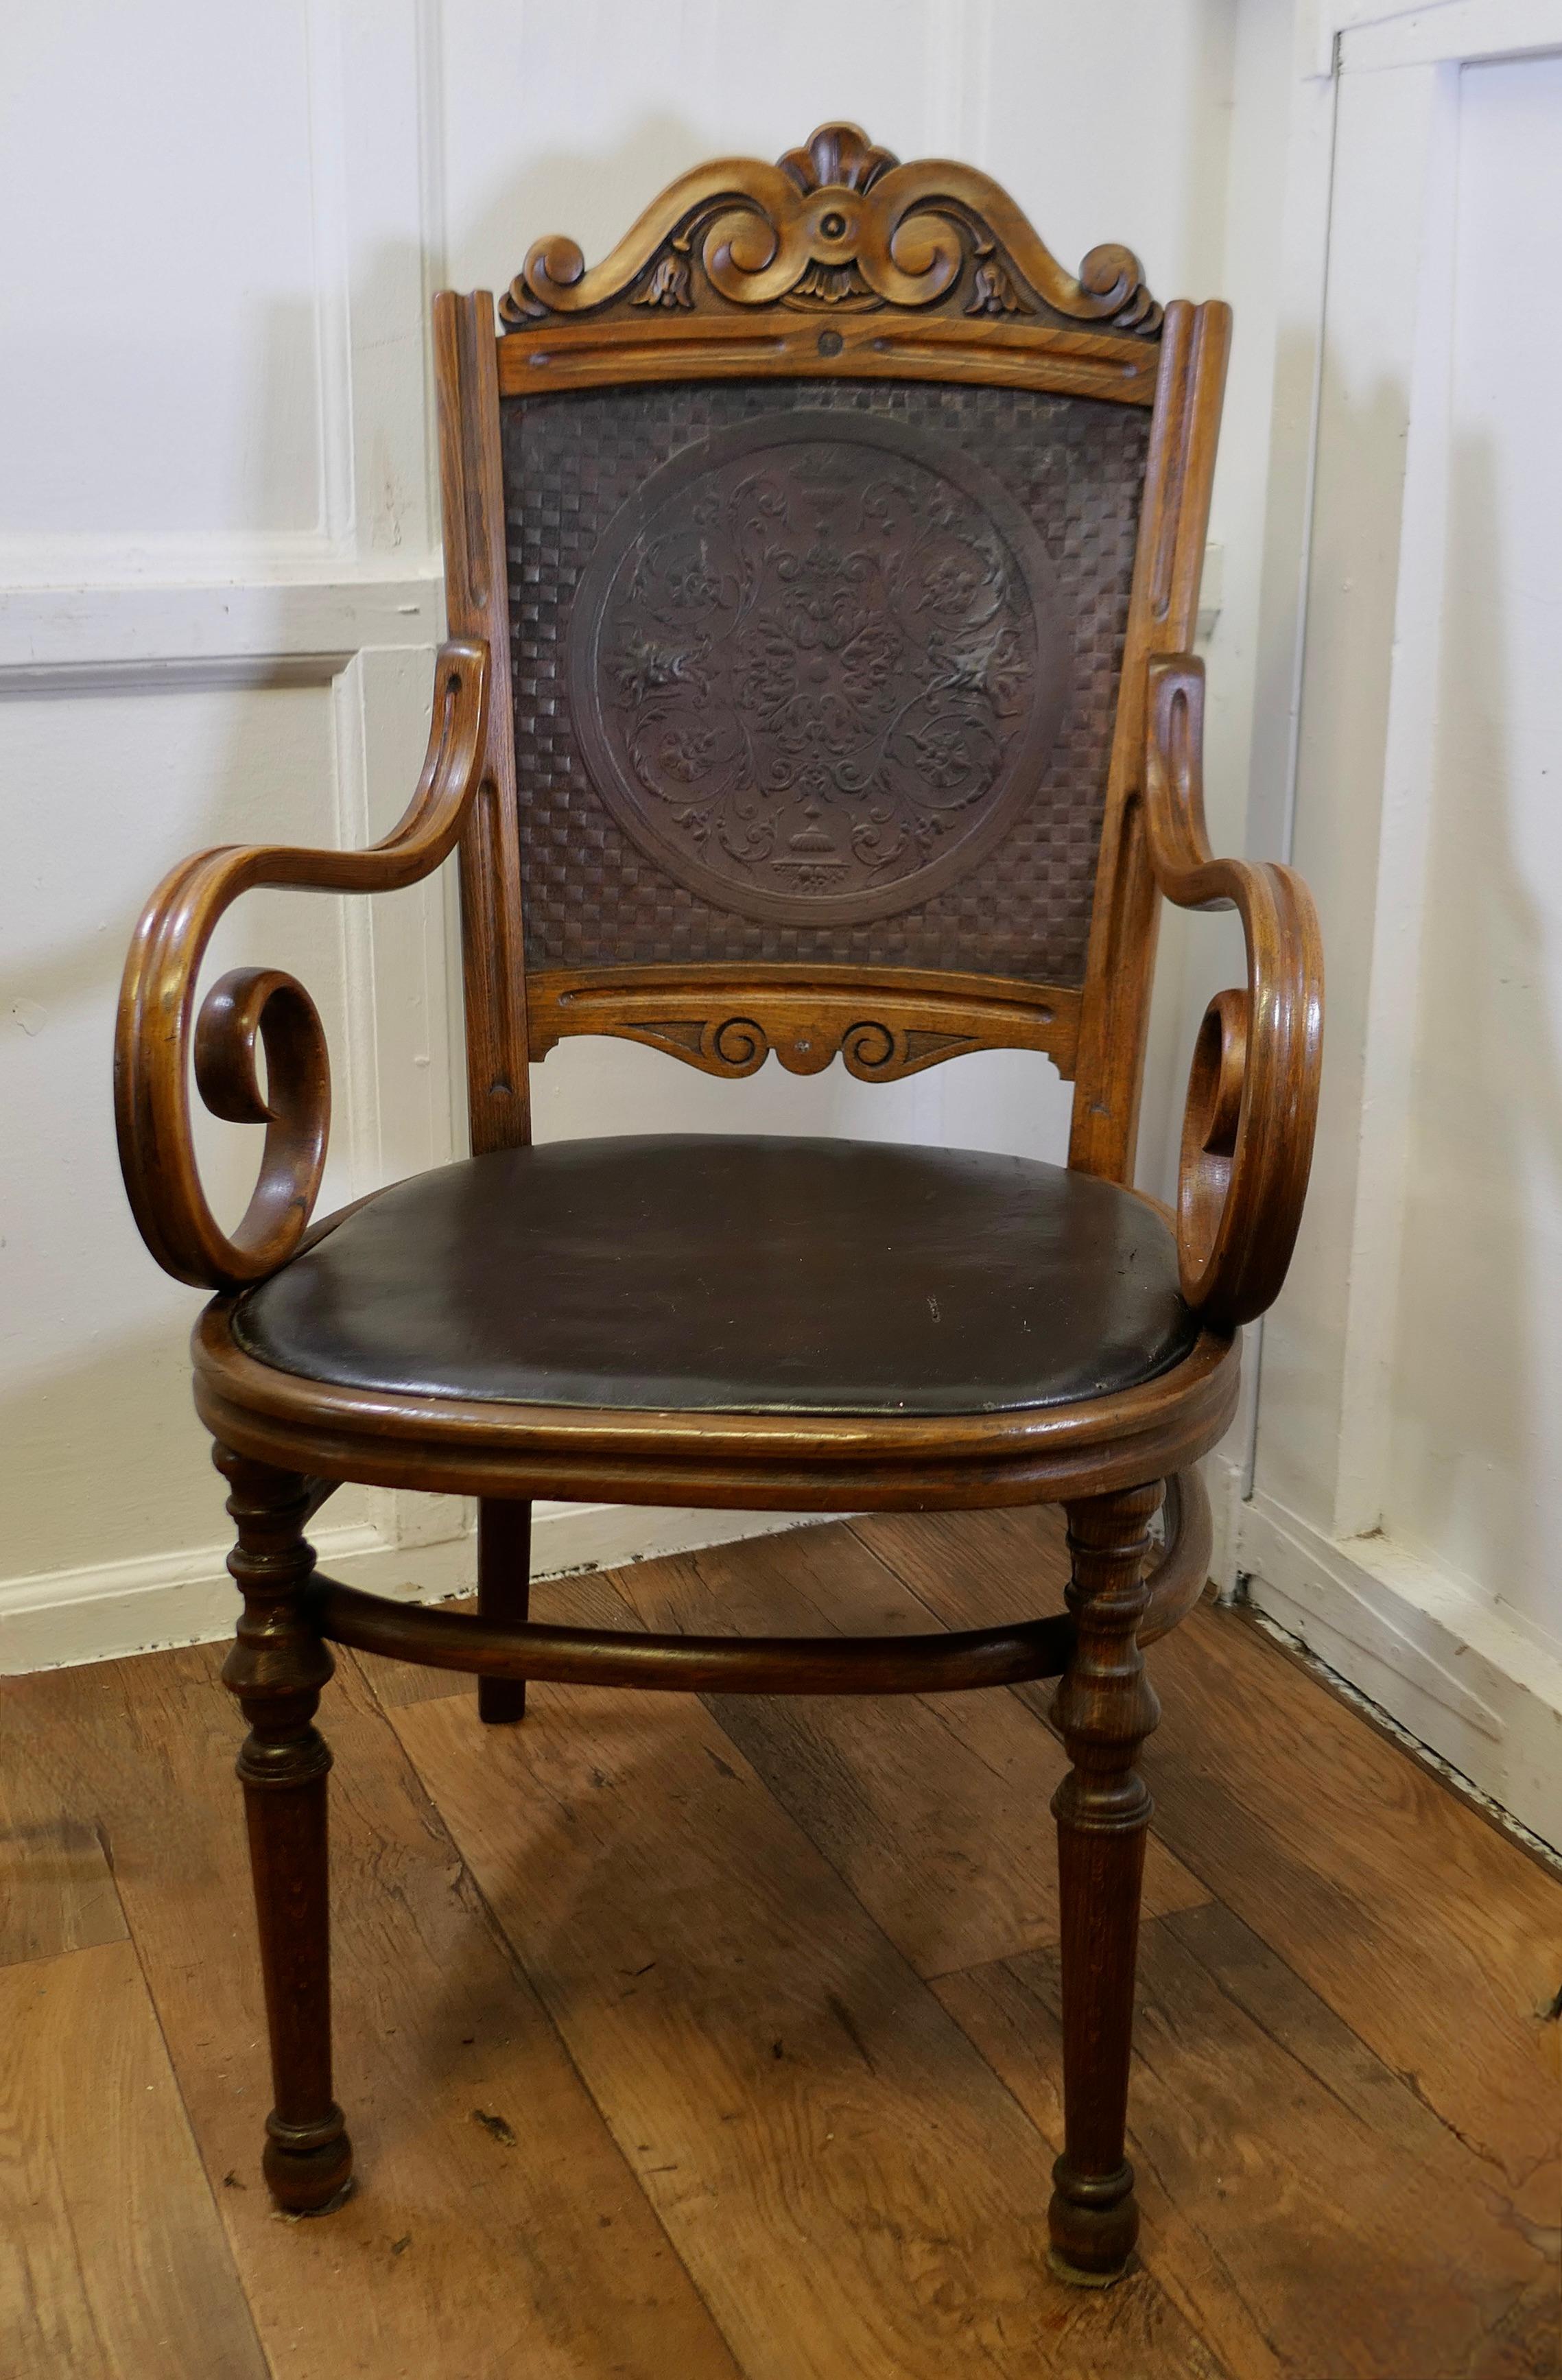 Viktorianischer gepolsterter Bugholz-Salon oder Schreibtischstuhl

Dies ist ein charmantes Stück, der Stuhl ist in der gebogenen Holz-Stil mit einem geschnitzten oberen Schiene, spiralförmig geschwungene Arme attraktive Drehungen zu den Beinen und